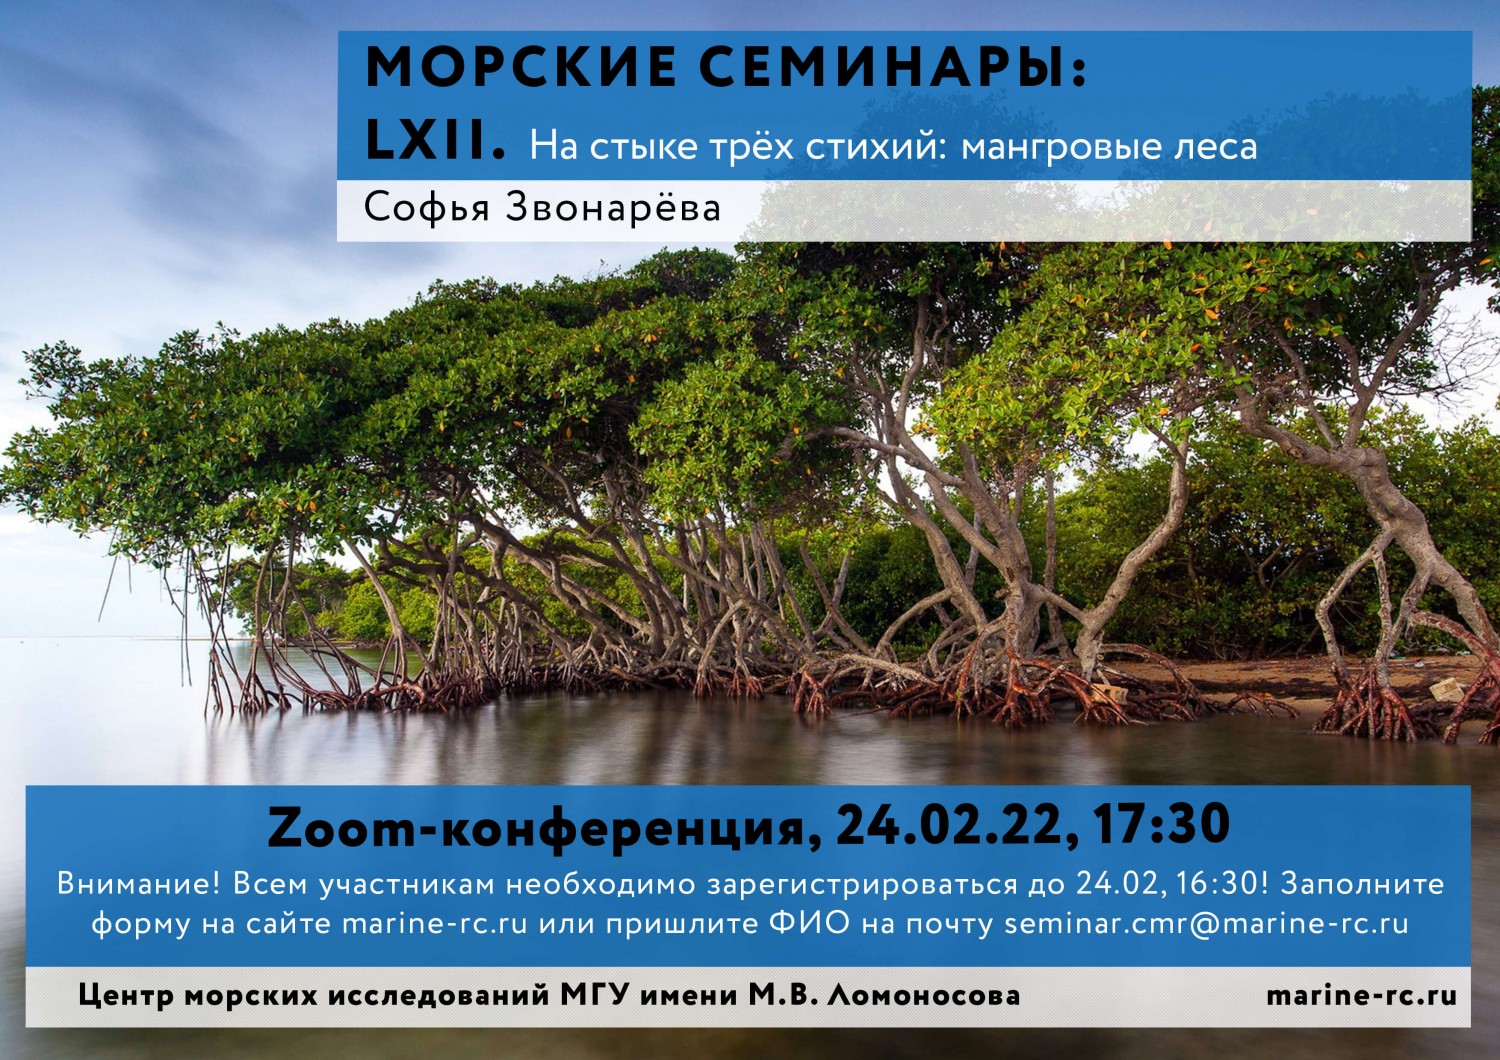 LXII Морской семинар «На стыке трёх стихий: мангровые леса»